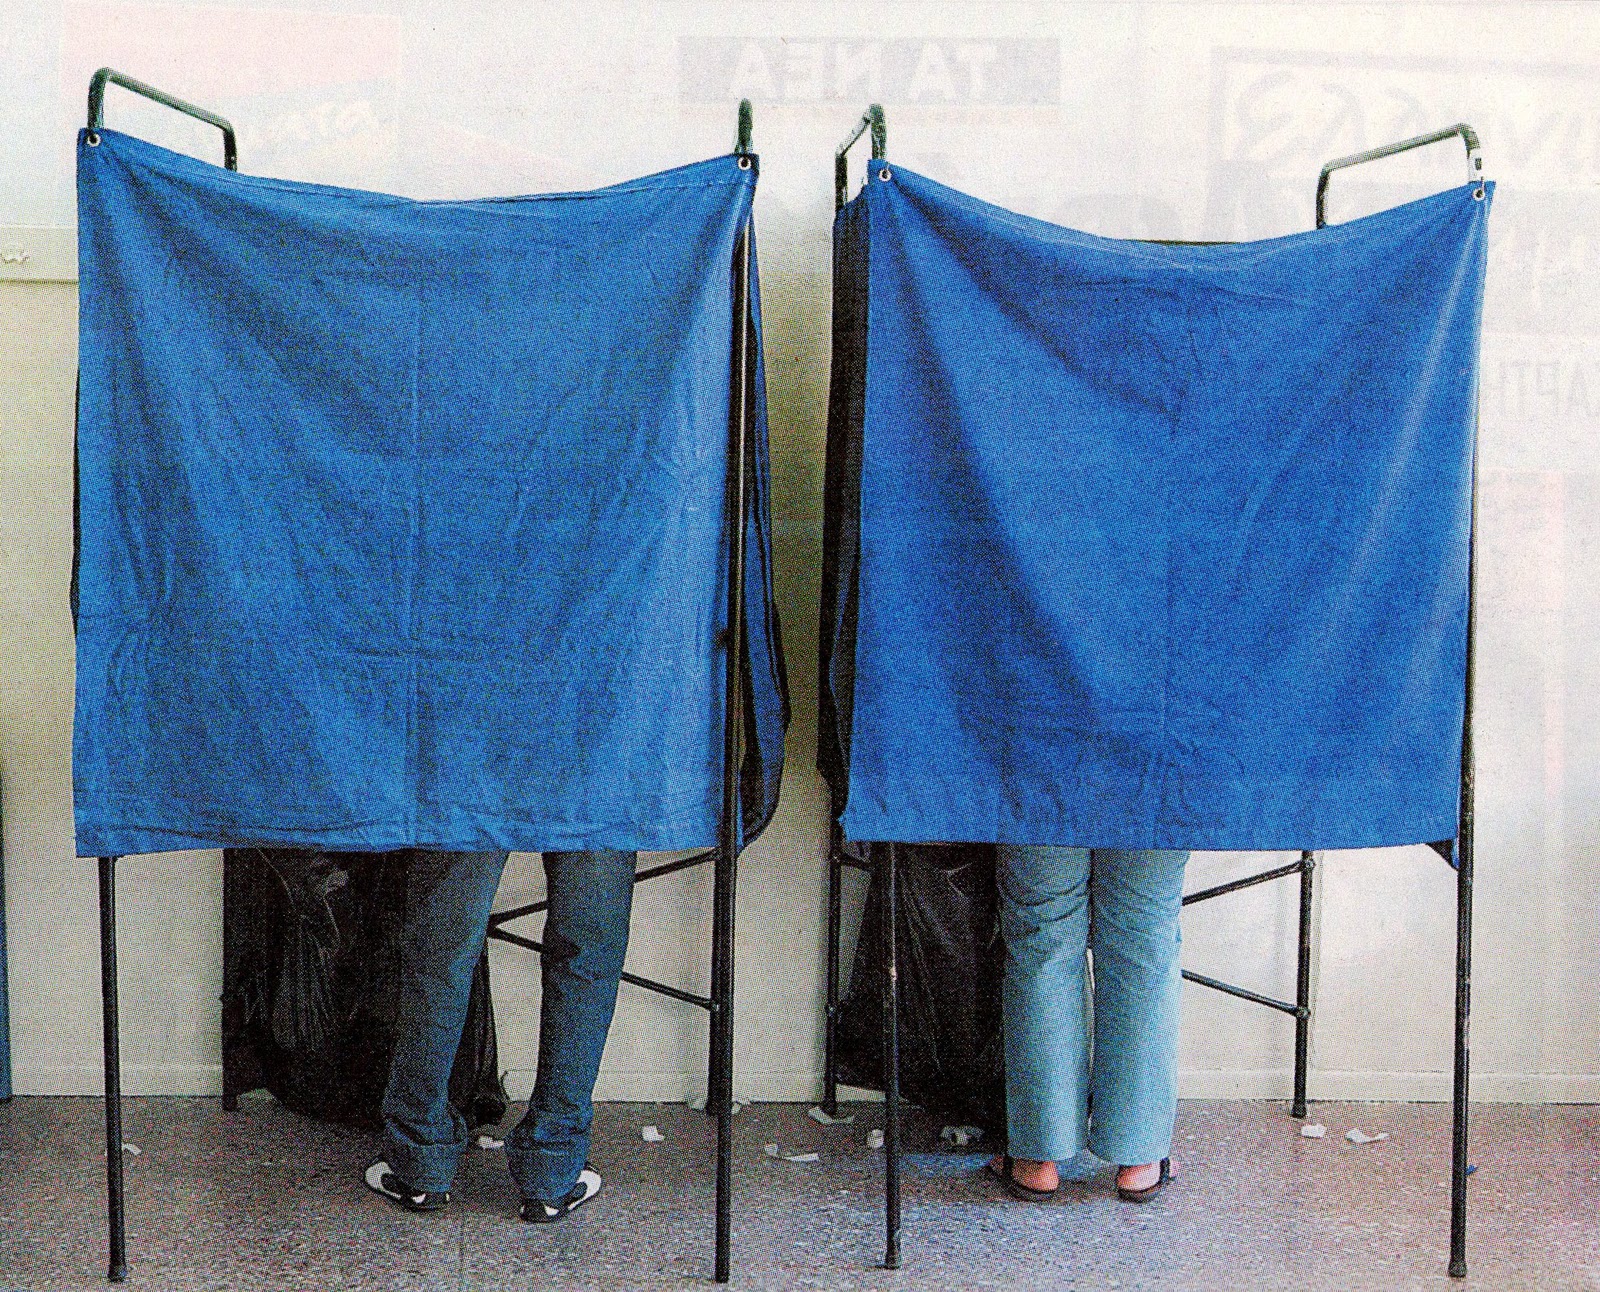 ΠΡΟΕΔΡΙΚΕΣ: Γύρισαν την πλάτη οι νέοι ψηφοφόροι – Τρεις στους τέσσερις δεν θα ψηφίσουν